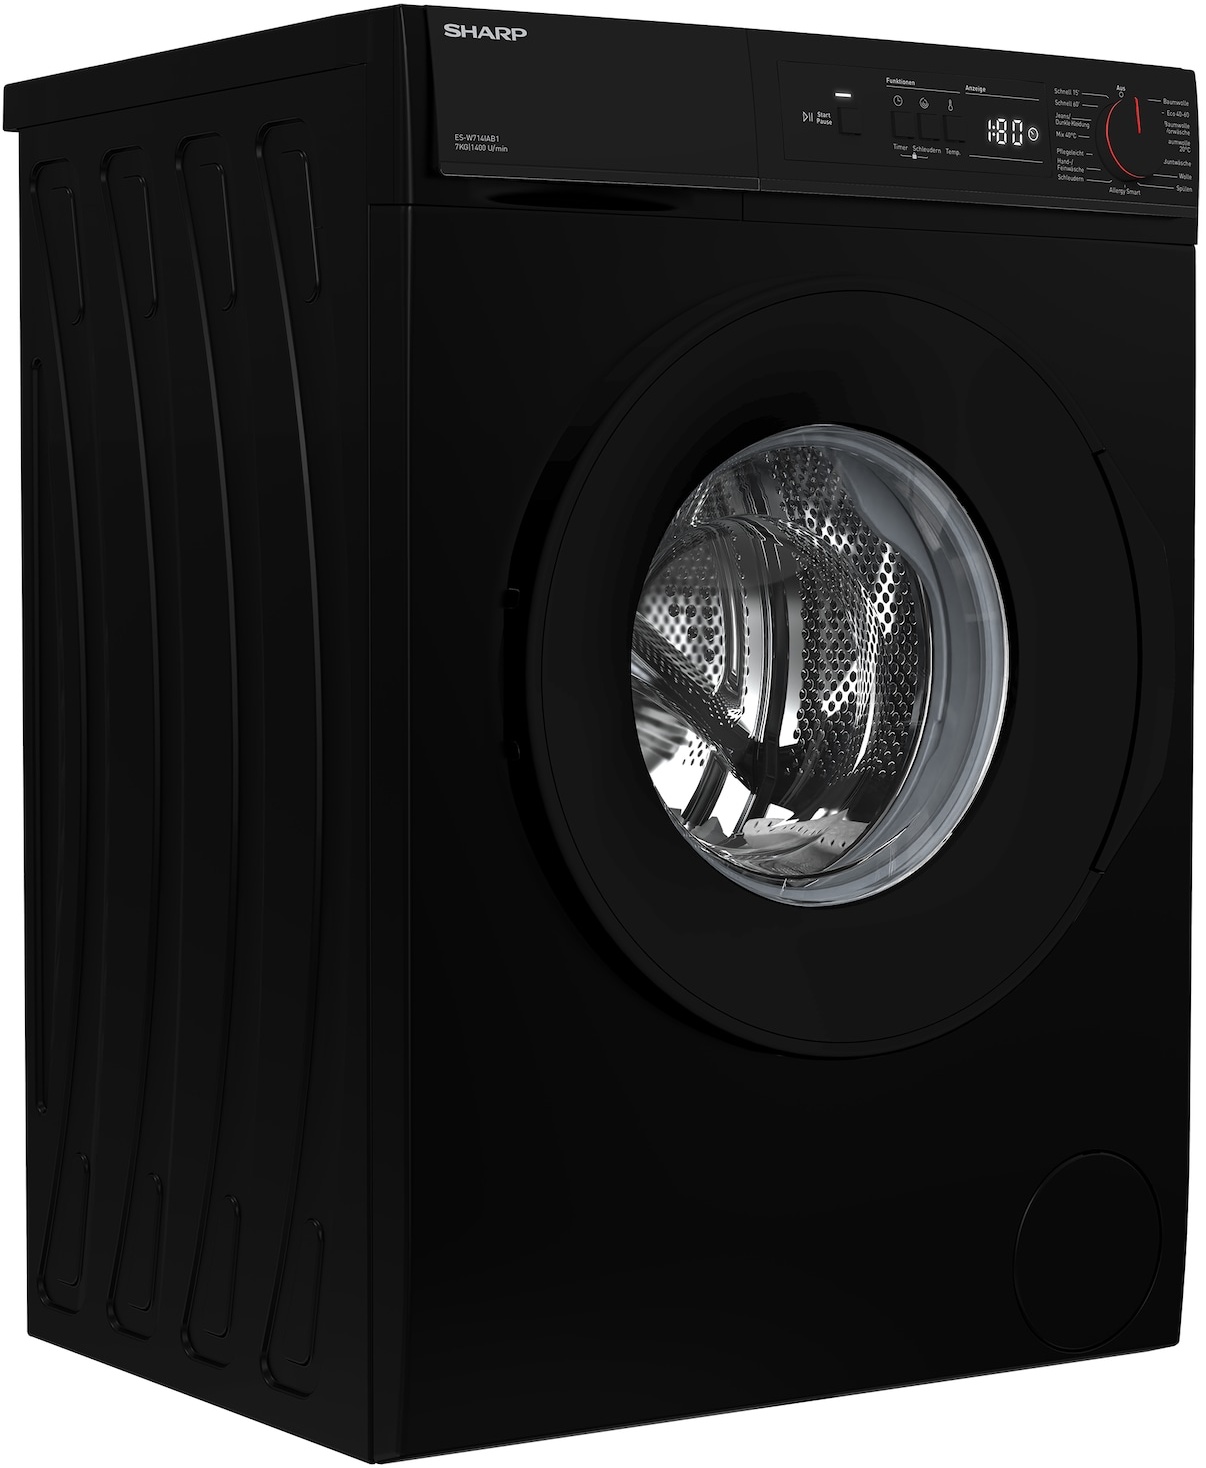 Sharp Frontlader-Waschmaschine - schwarz mit LED Display